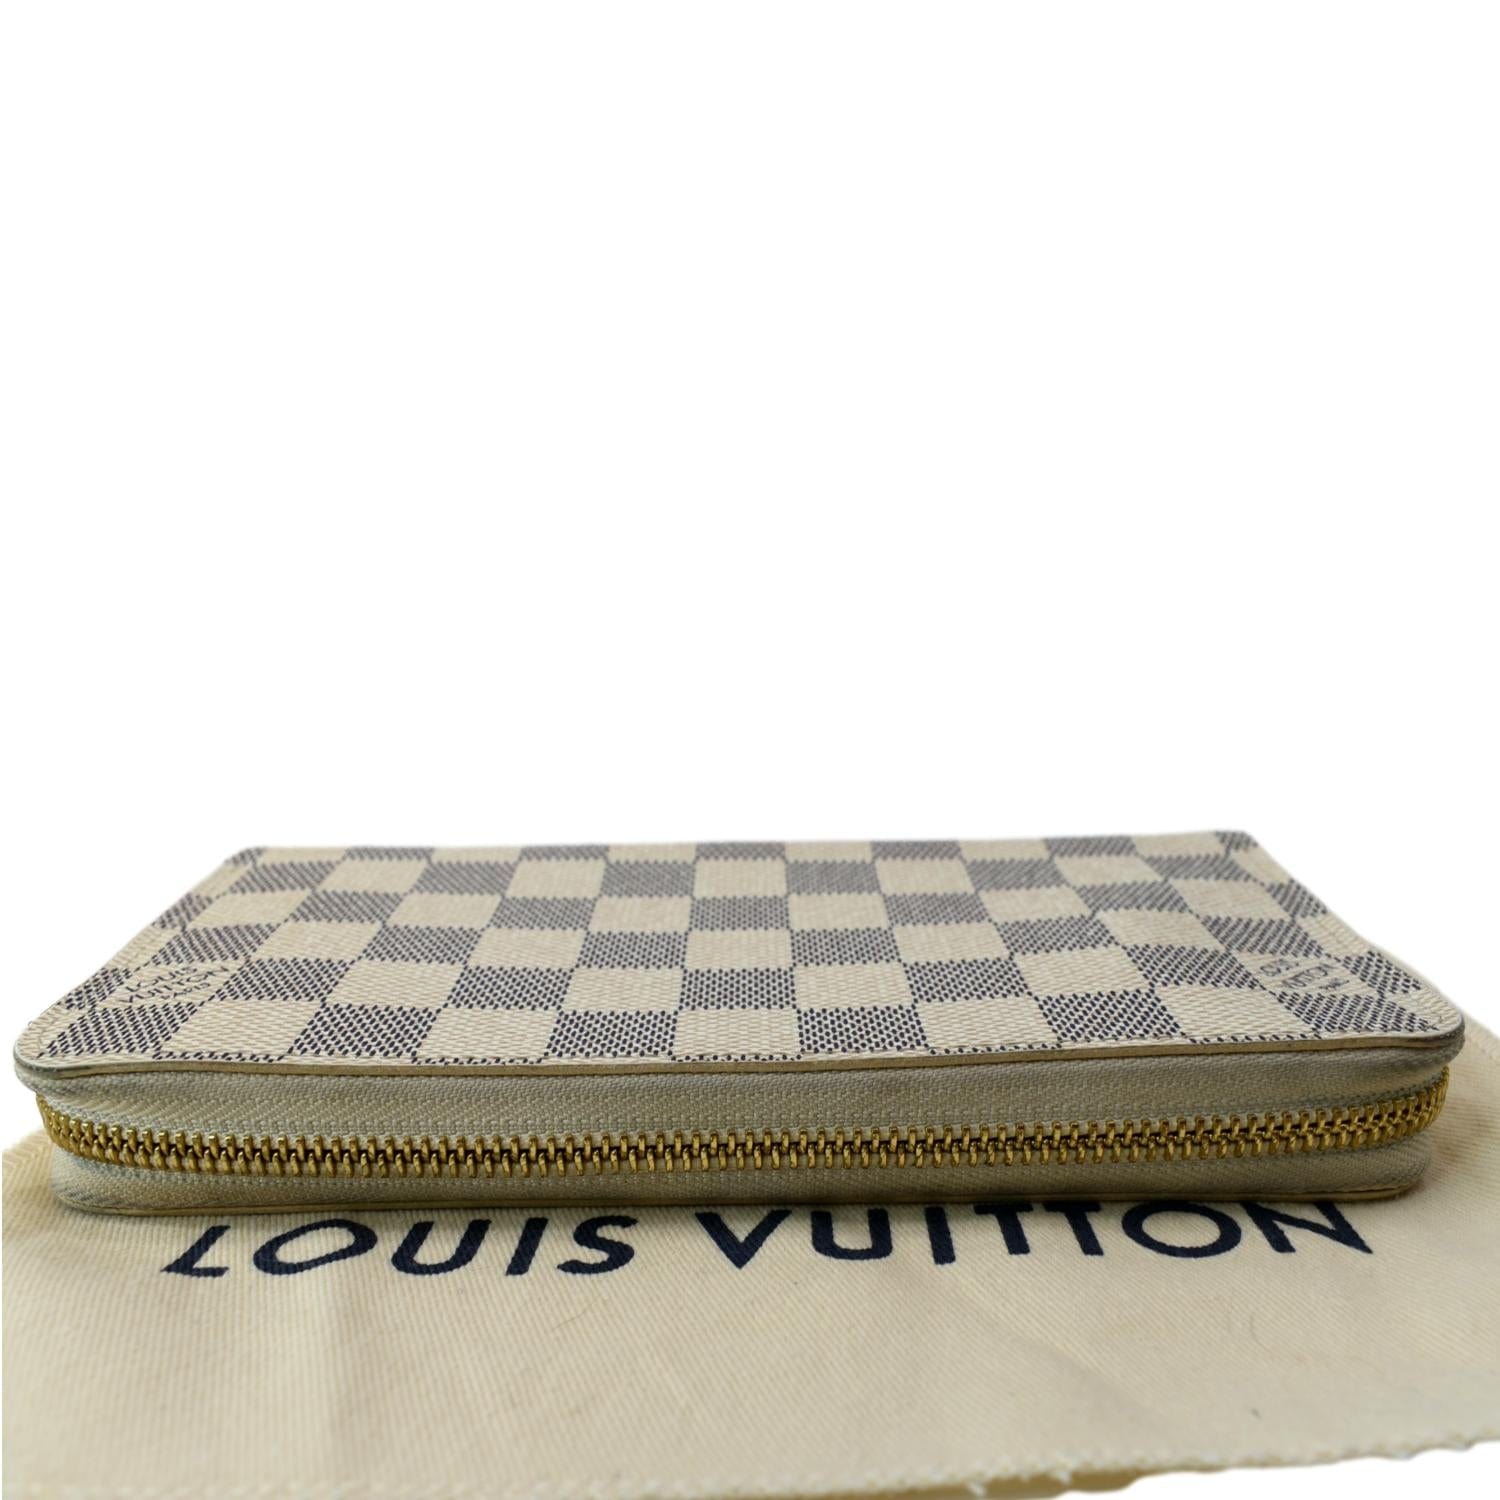 New Louis Vuitton Game On White Zippy Wallet❤️ 